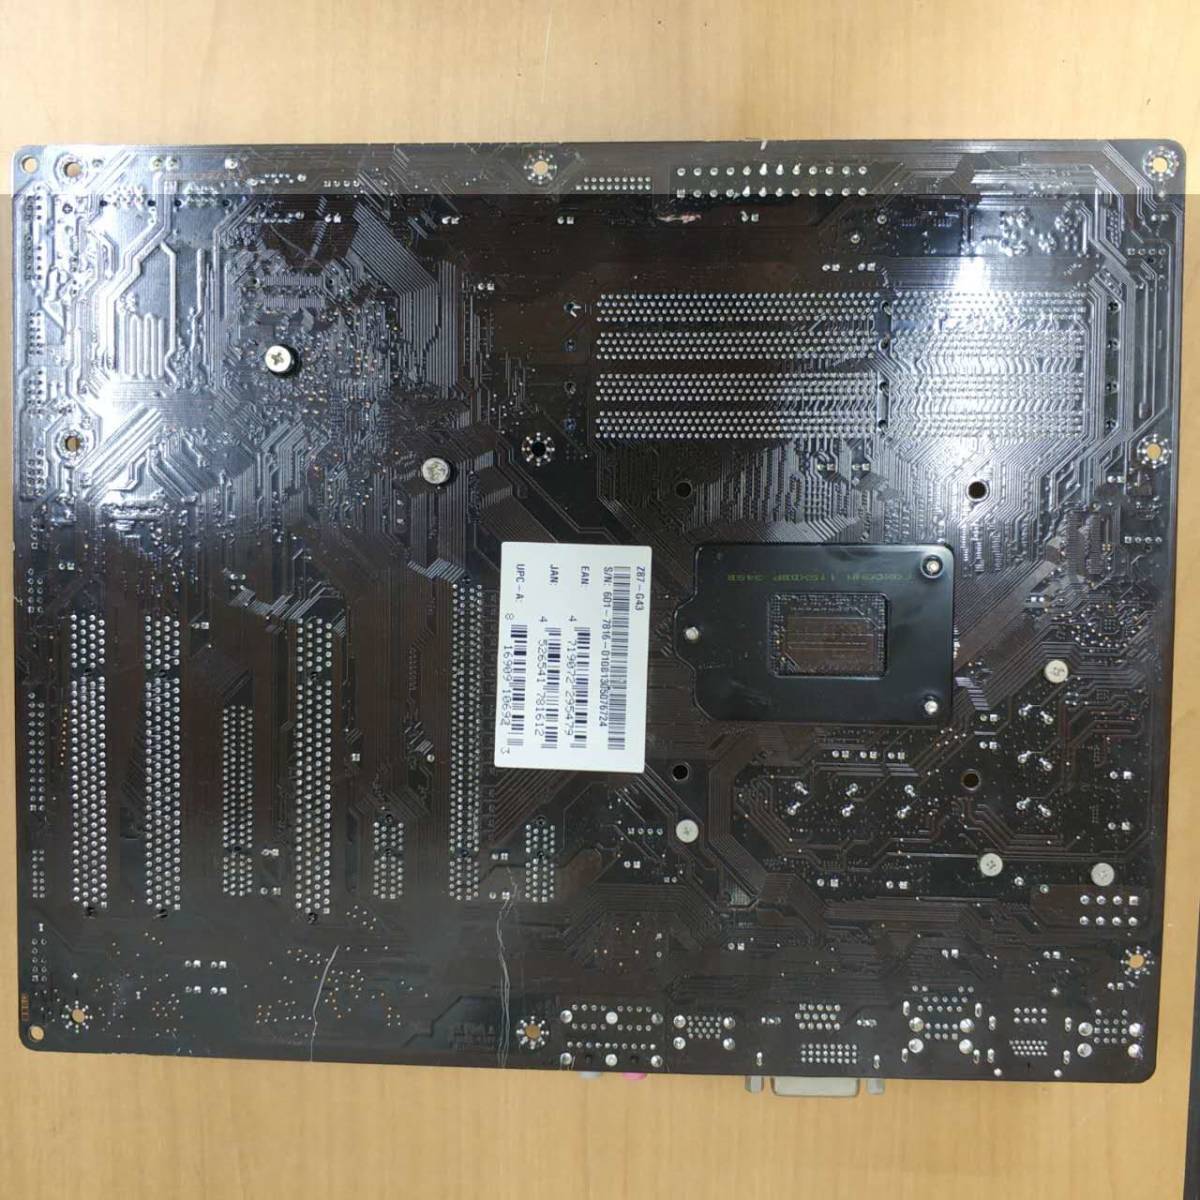 MSI Z87-G43/ATX материнская плата /INTEL(LGA1150)CPU соответствует /PC детали DIY ремонт материал * работоспособность не проверялась * б/у товар * текущее состояние доставка 